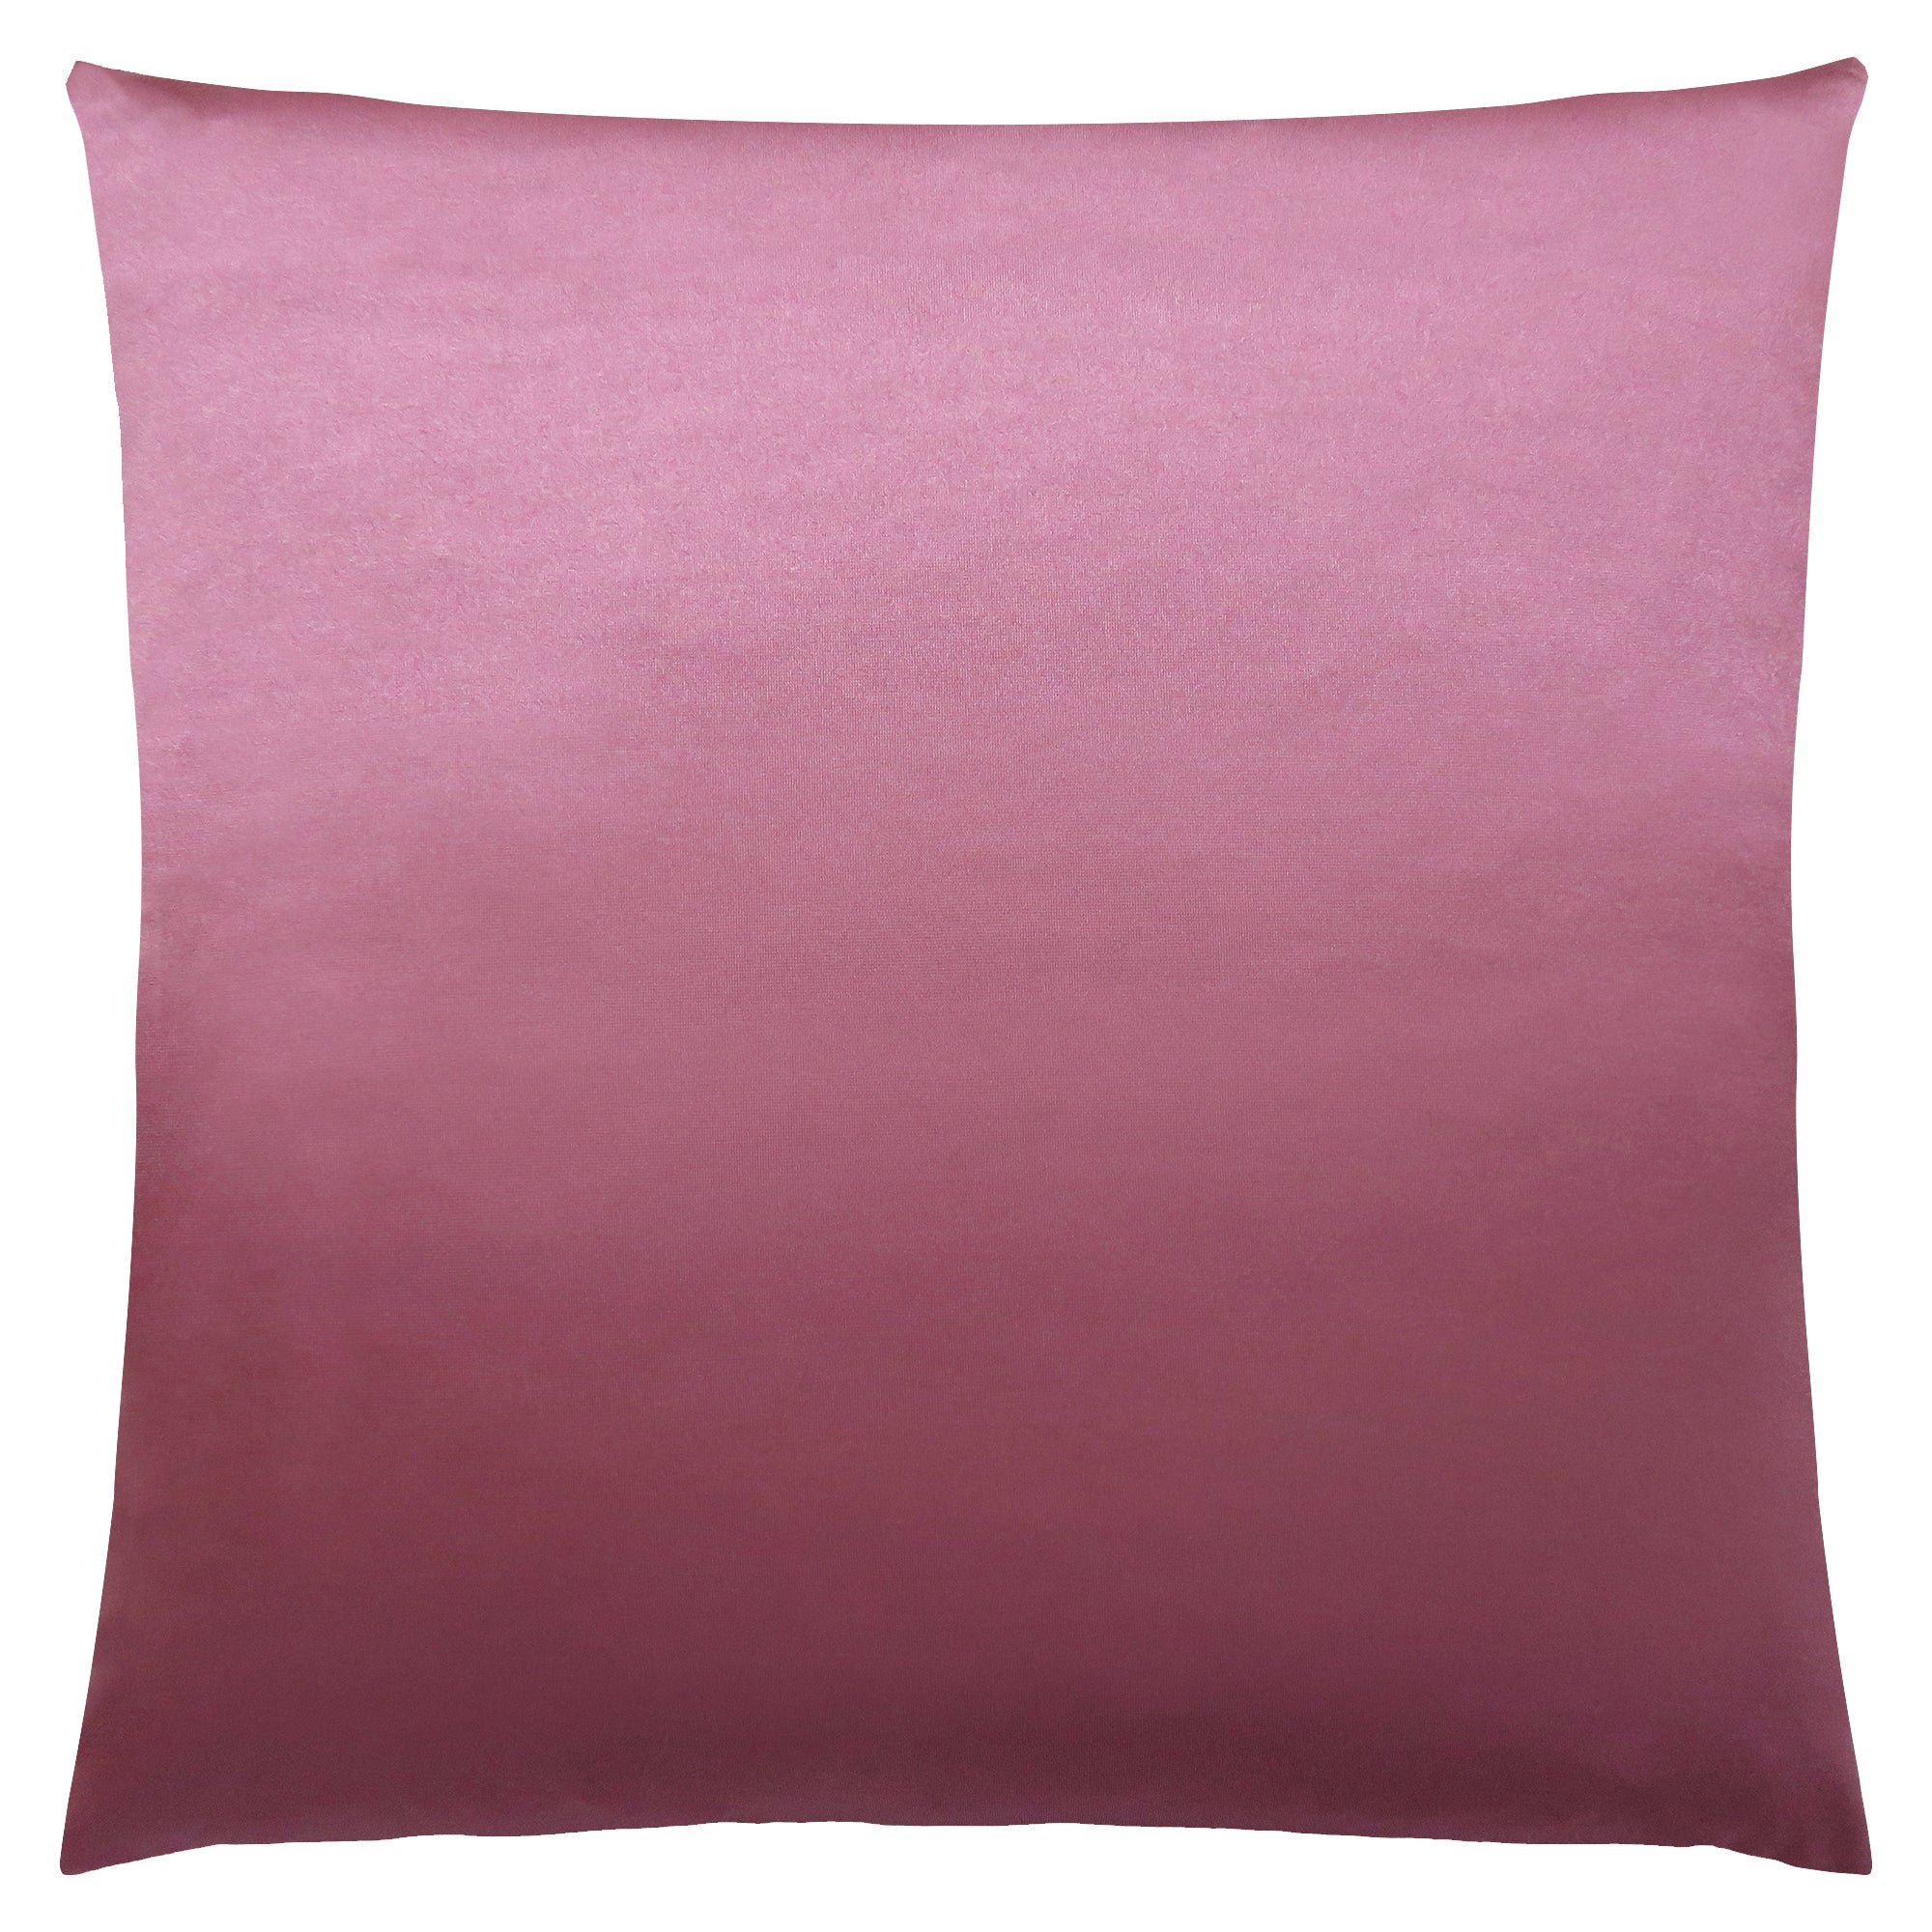 Pillow - 18X 18 / Pink Satin / 1Pc